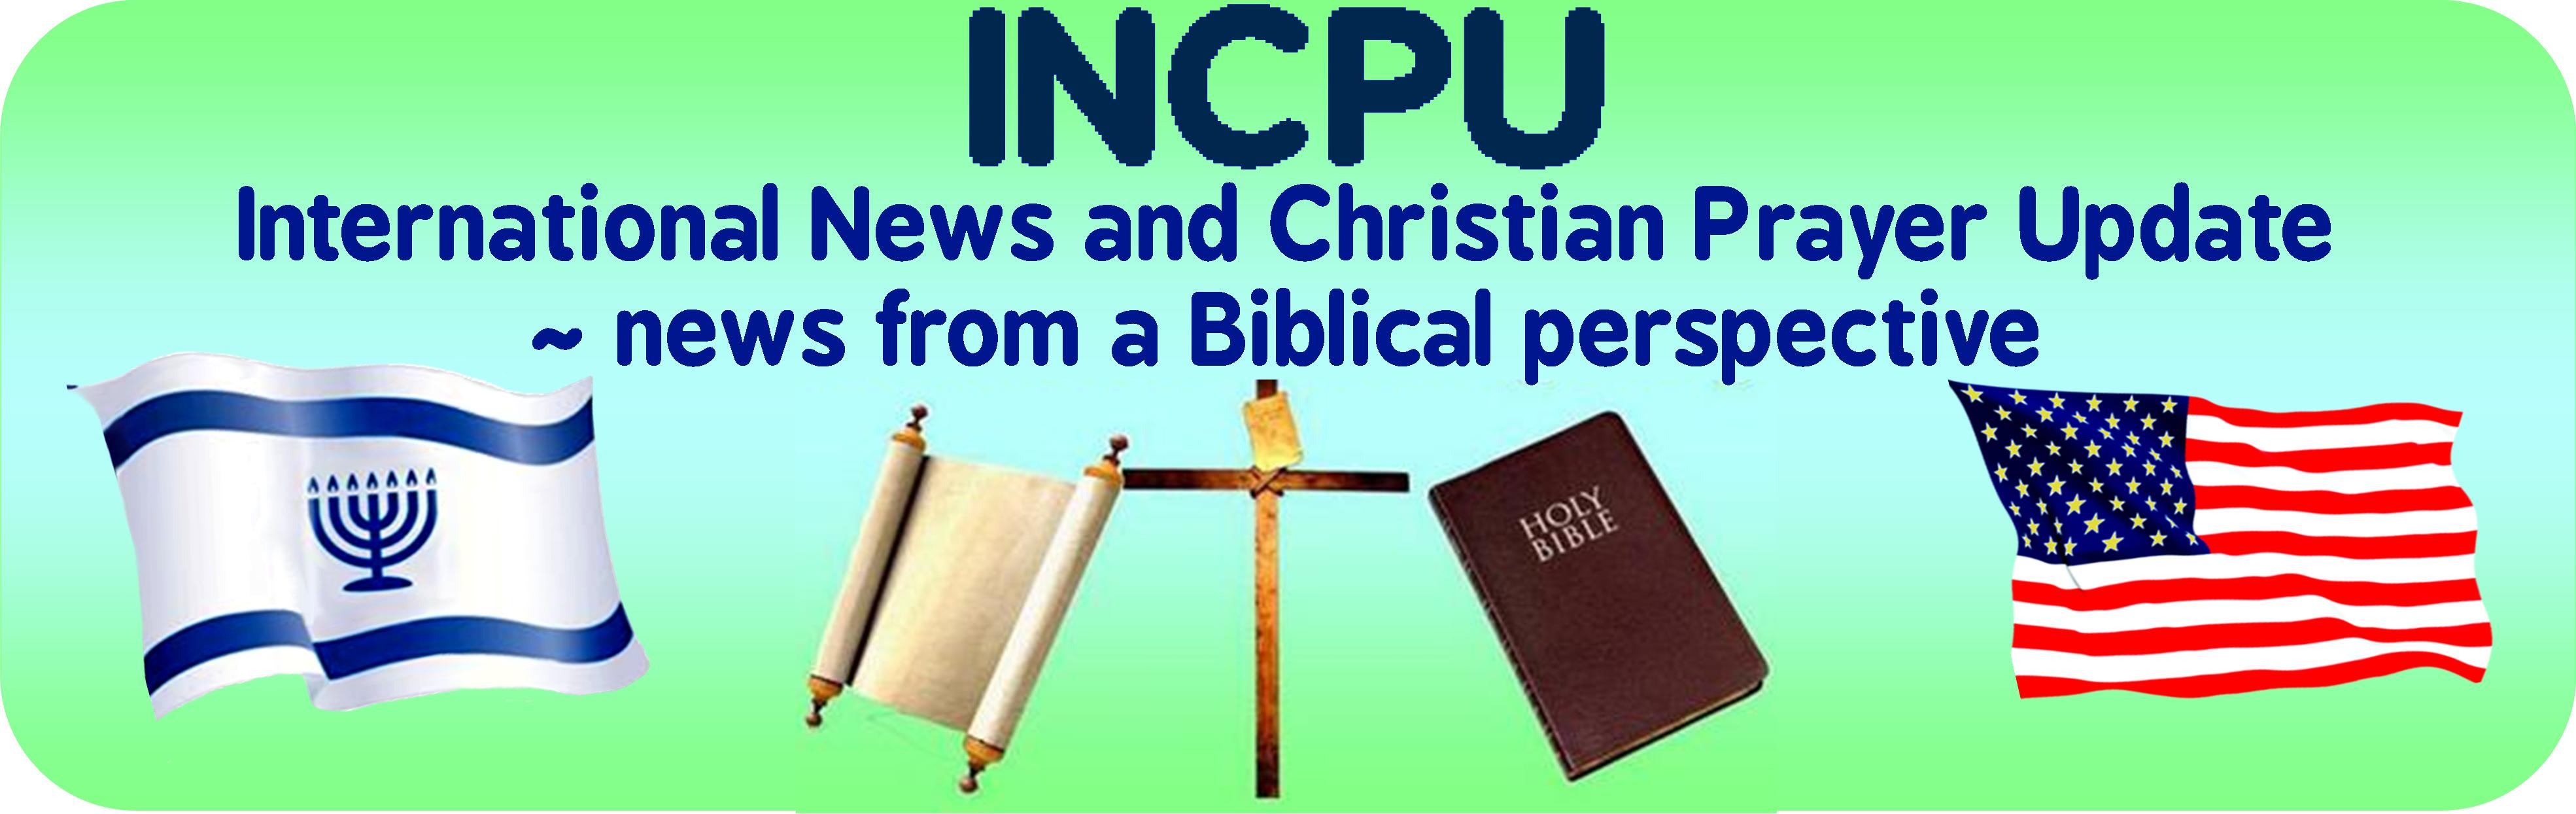 INCPU News banner